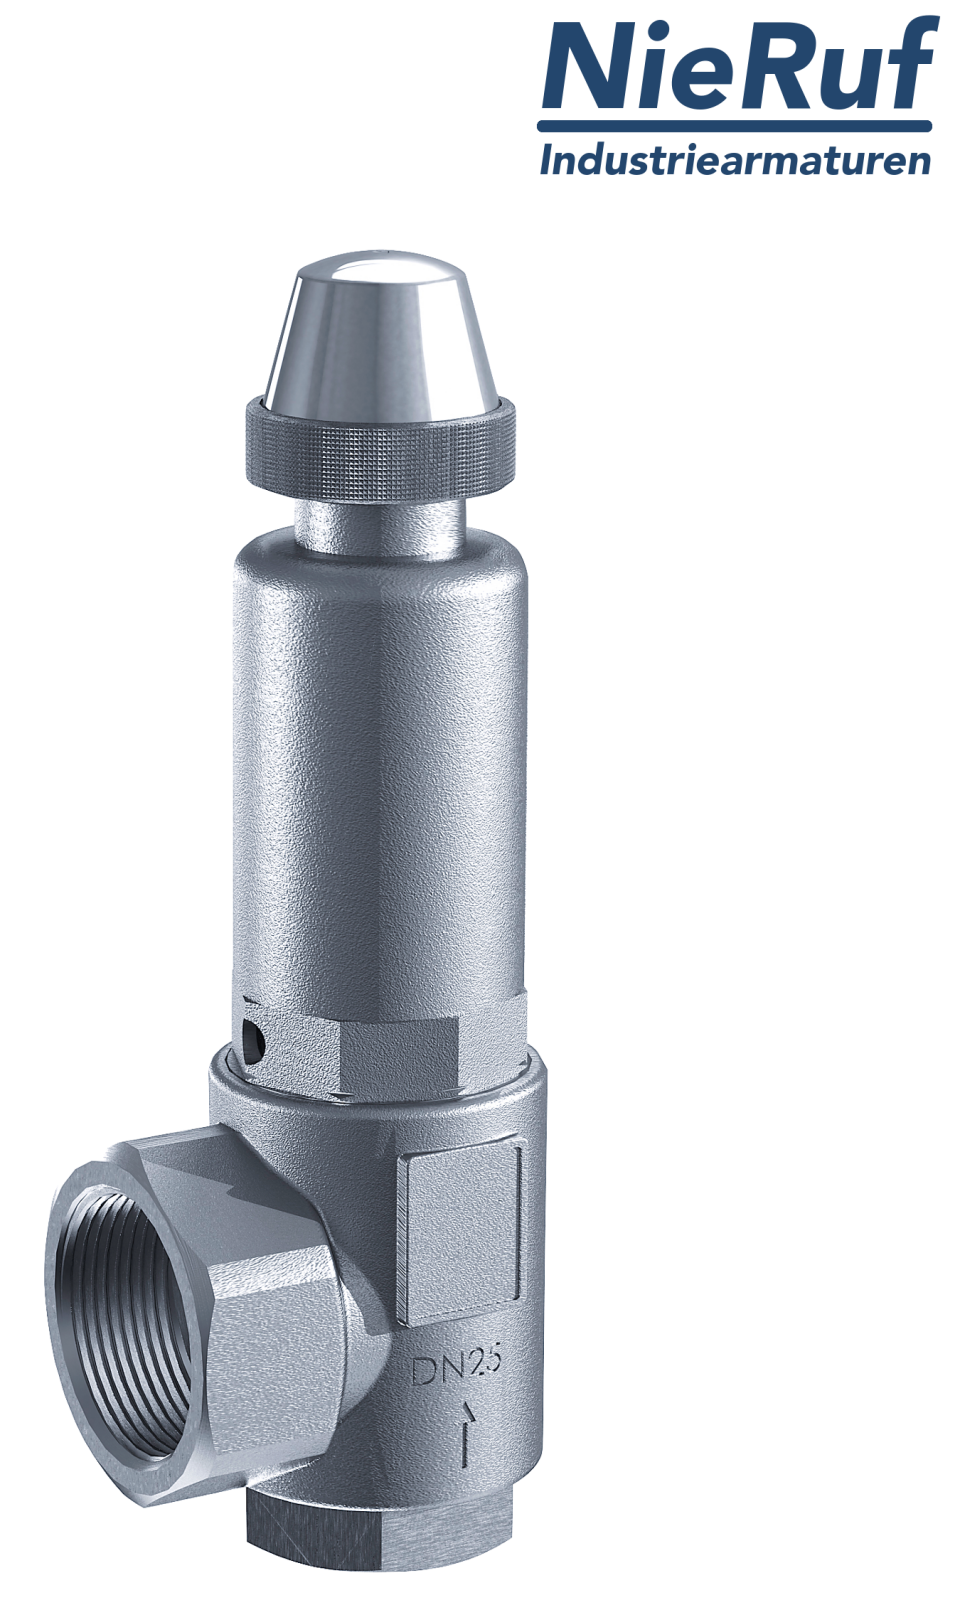 safety valve 2" x 2" fm SV05 neutral liquid media, stainless steel FKM